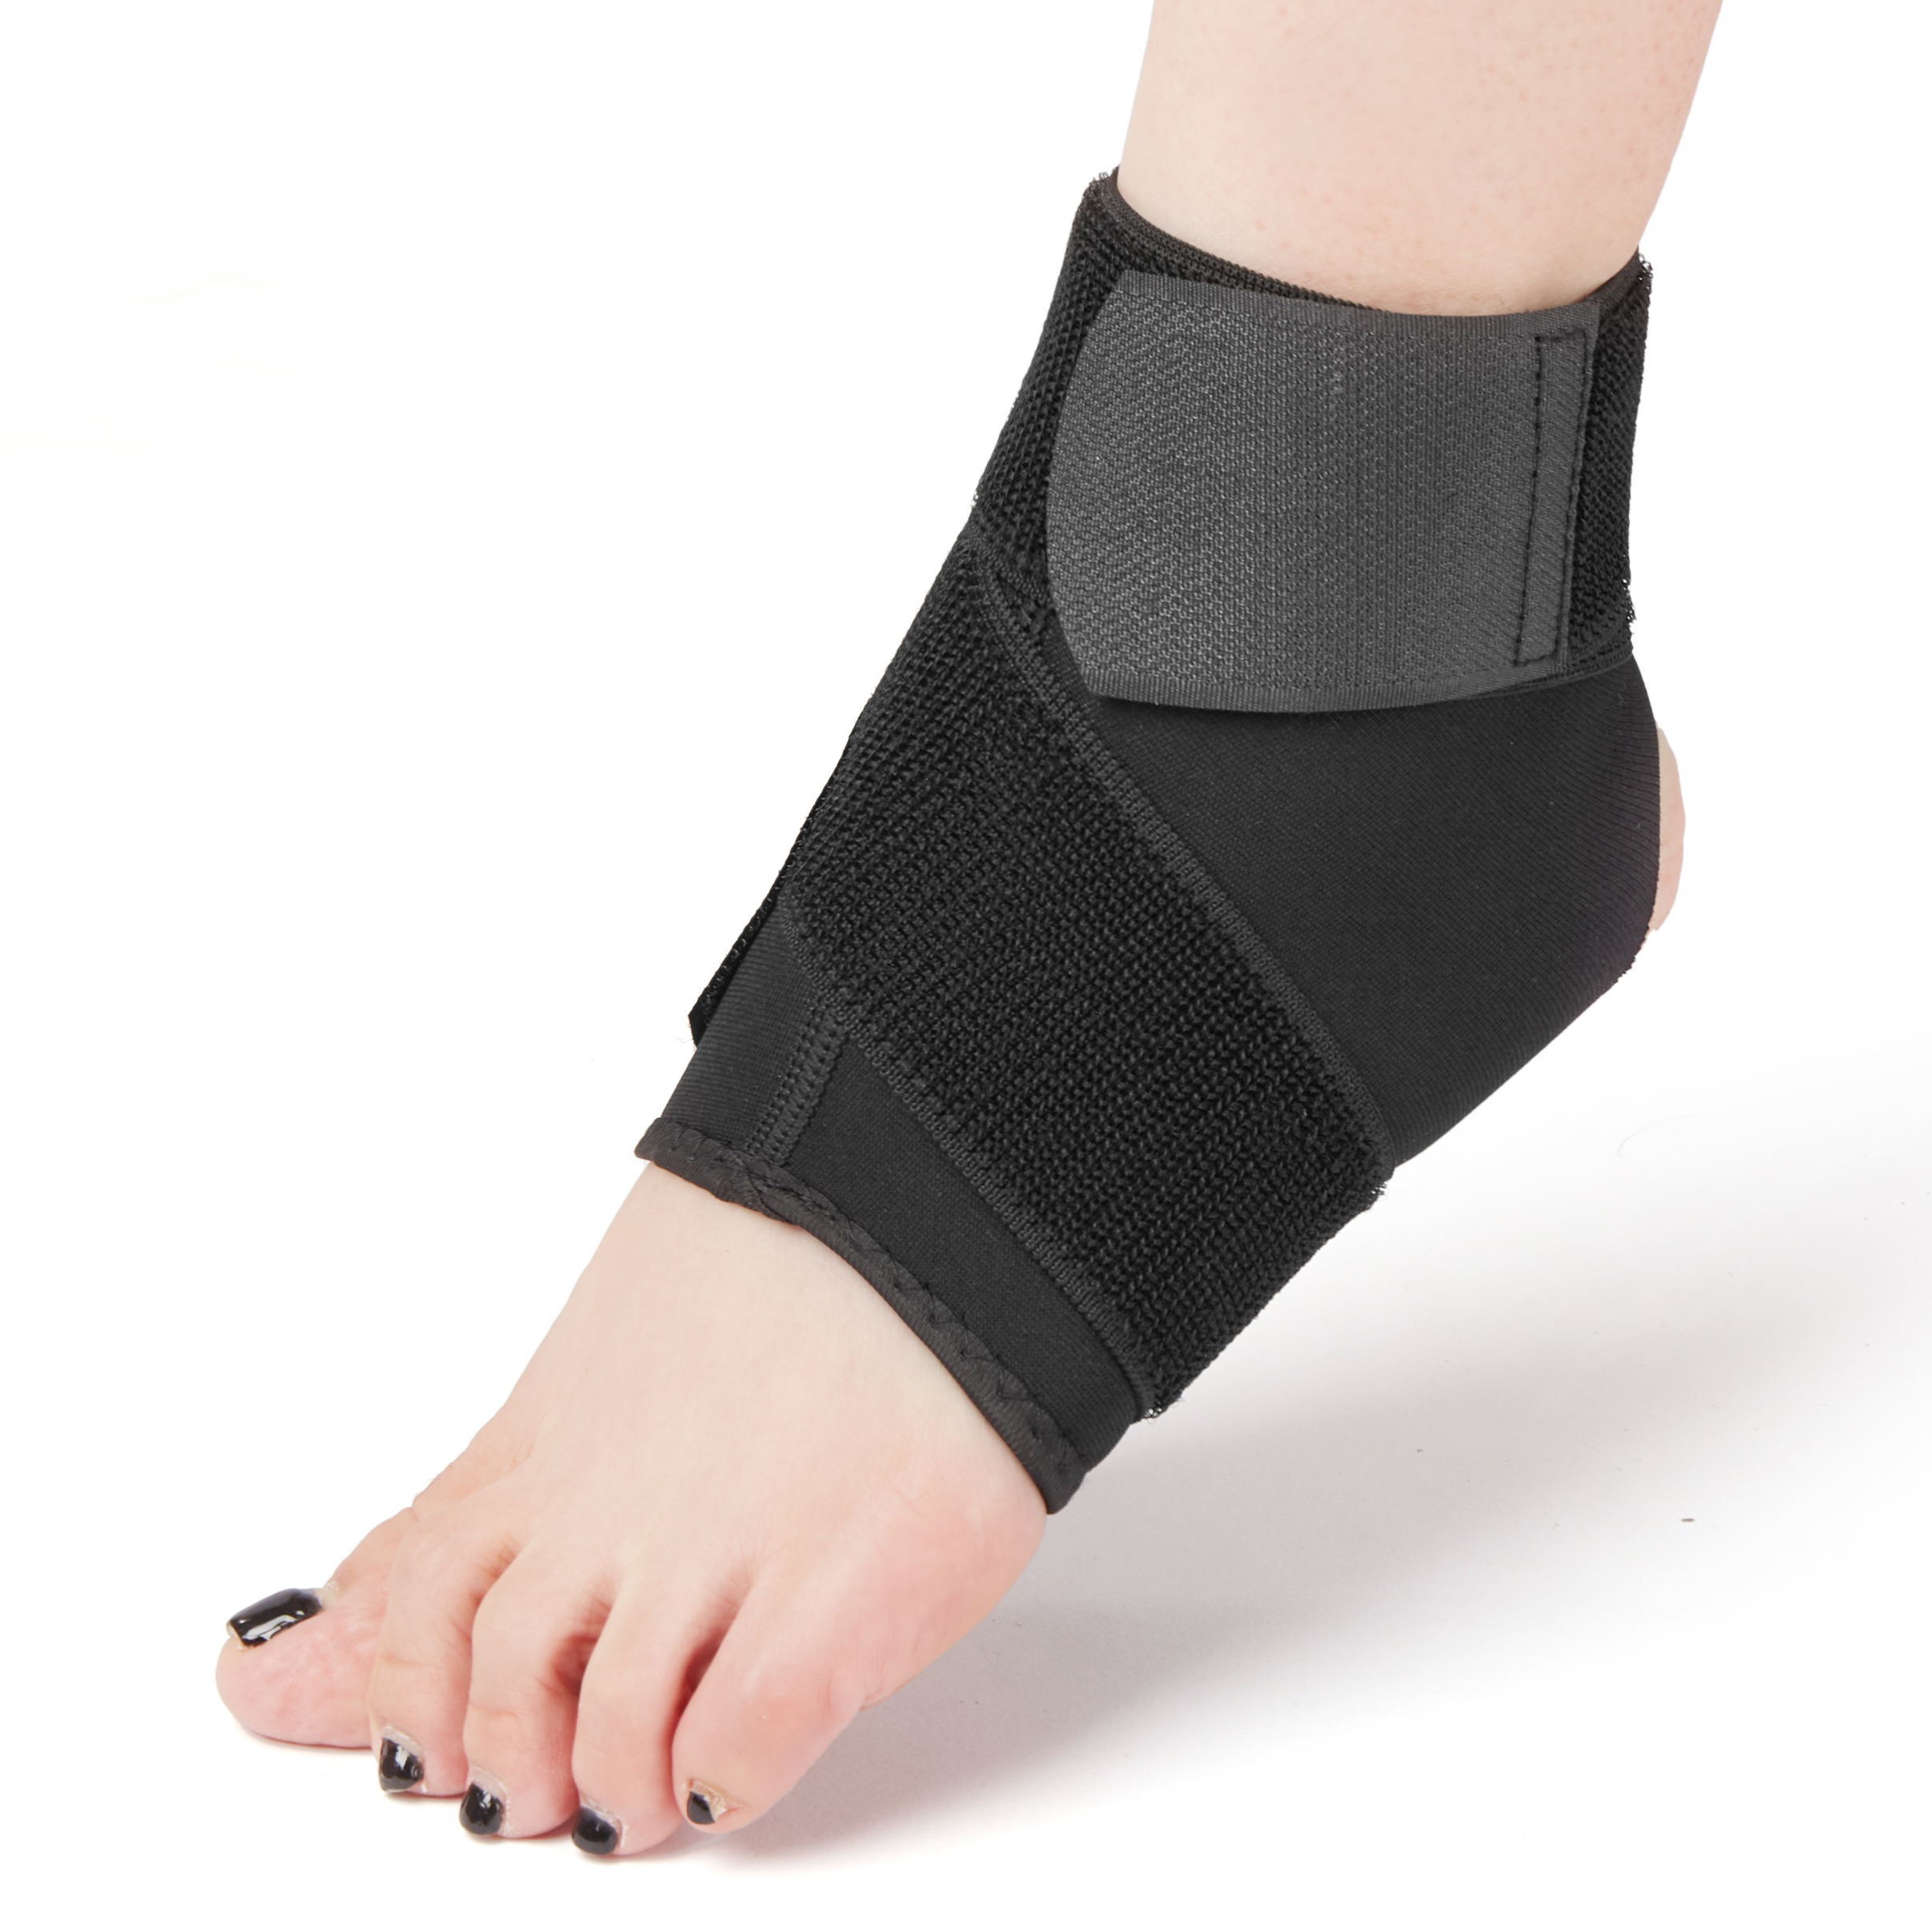 Protezione della caviglia a compressione regolabile in neoprene traspirante Immagine in primo piano